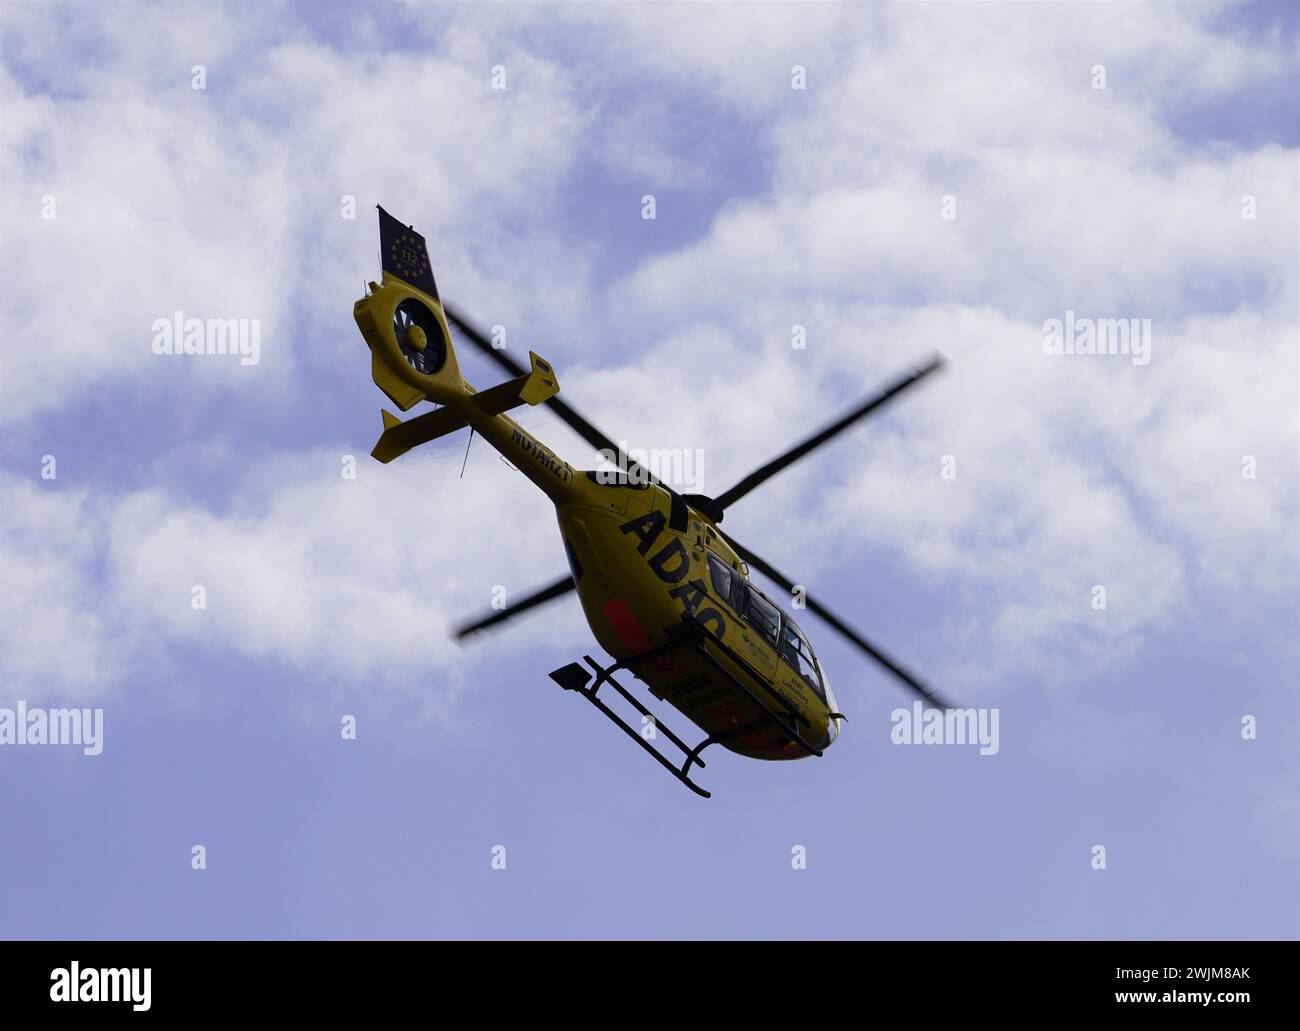 ADAC Luftrettung en Allemagne exploite une flotte d'hélicoptères EC135, connus pour leur fiabilité et leur polyvalence dans les services médicaux d'urgence. Banque D'Images